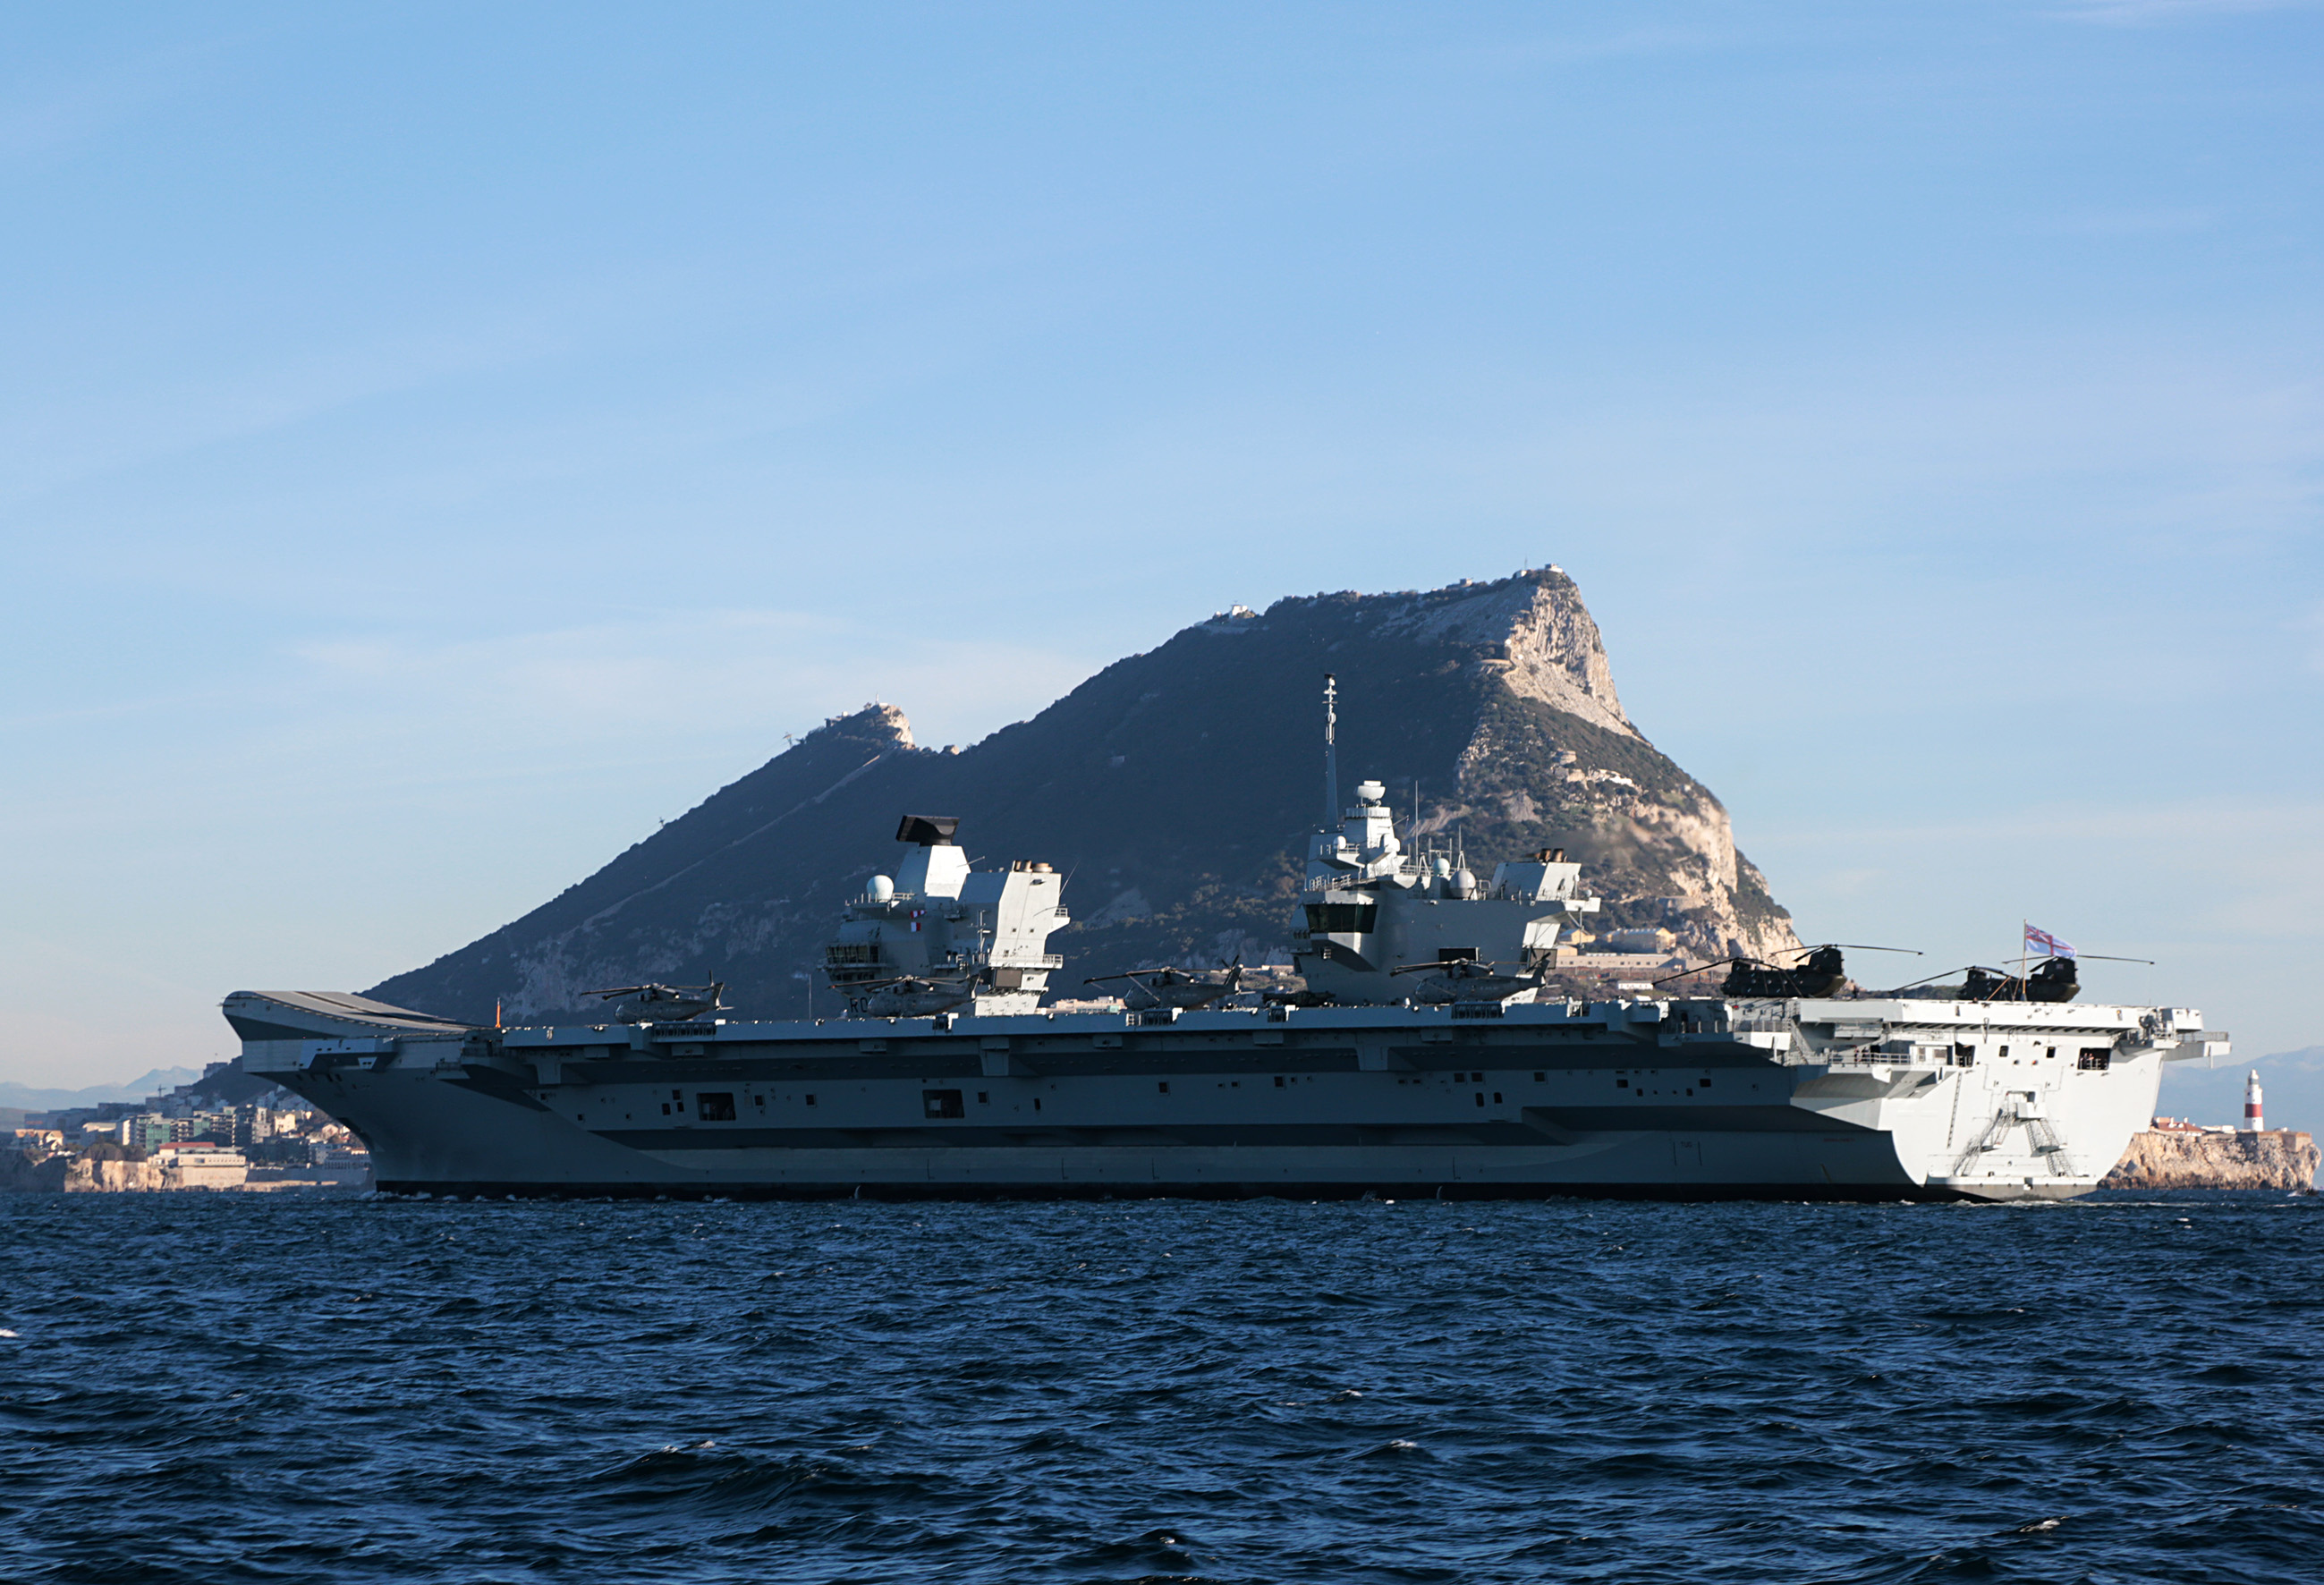 Portaaviones HMS Queen Elizabeth llegando a Gibraltar. Imagen tomada desde uno de los buques de apoyo (via Royal Navy) (22).jpg